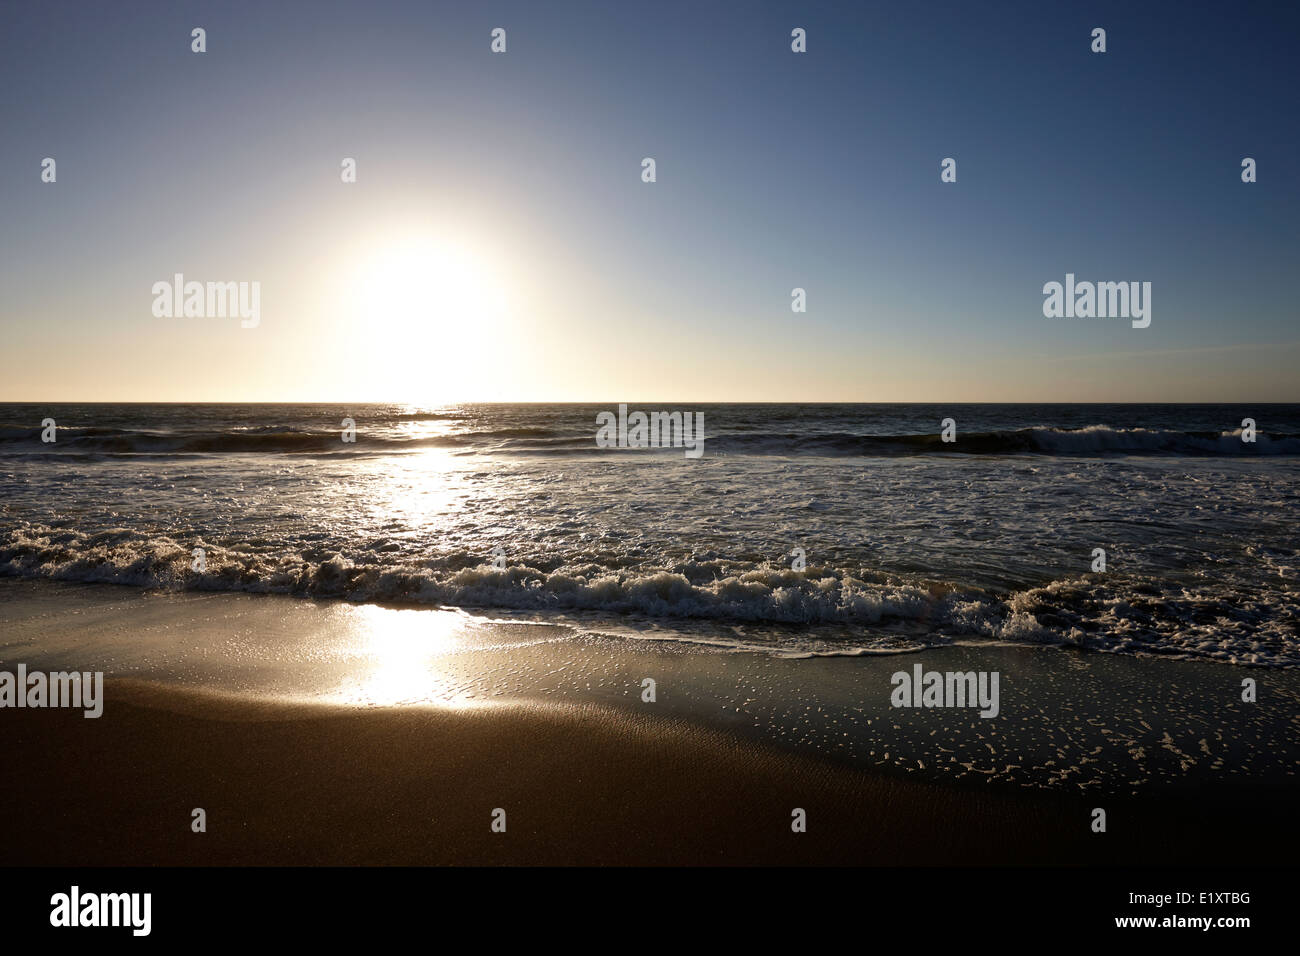 Soleil sur plage de sable fin sur l'océan pacifique los pellines chili Banque D'Images